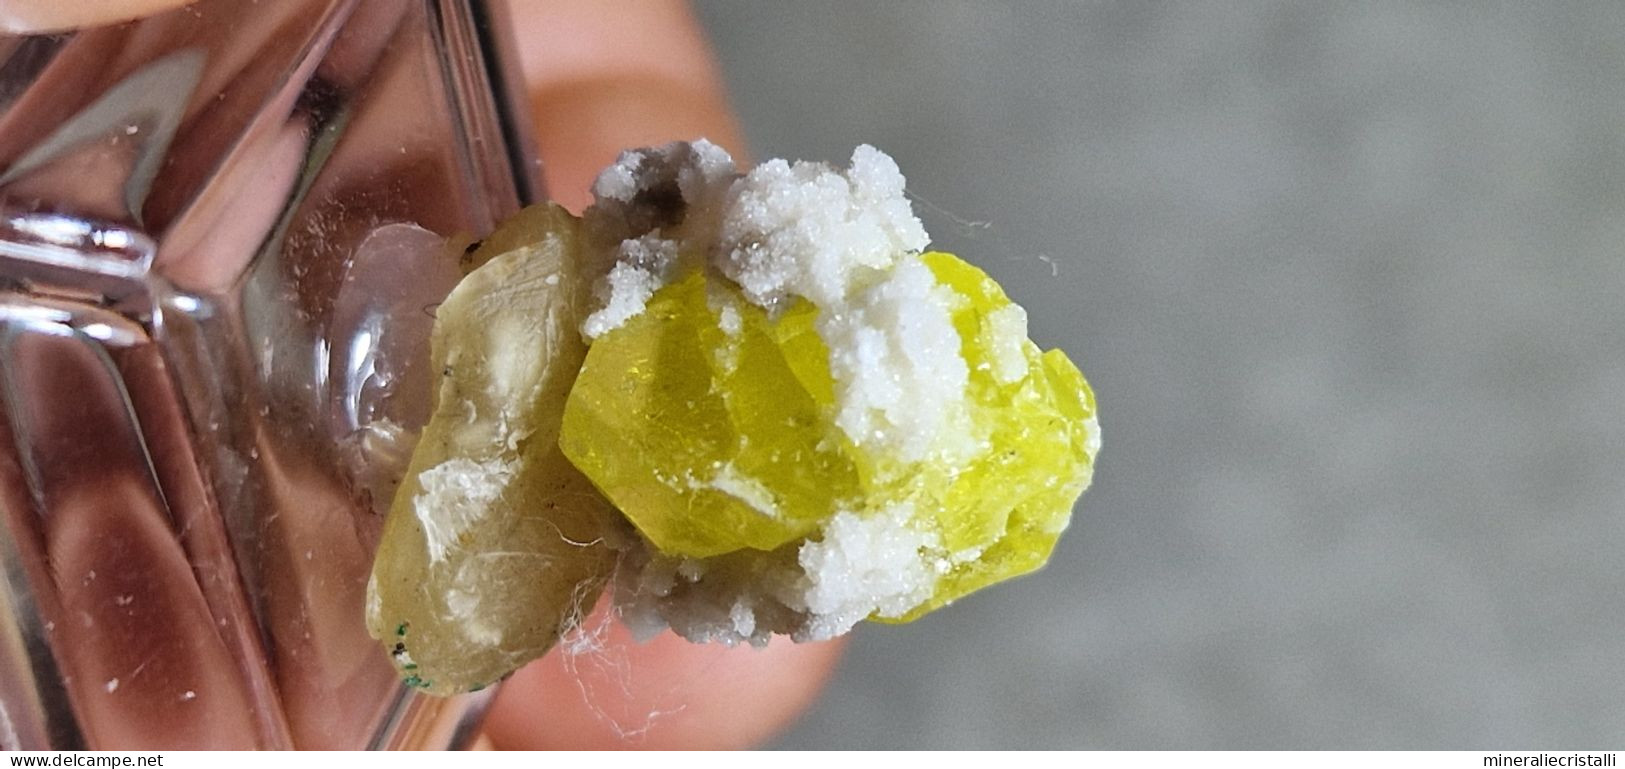 Zolfo cristallo singolo gemma Sicilia cozzodisi 1,83 gr